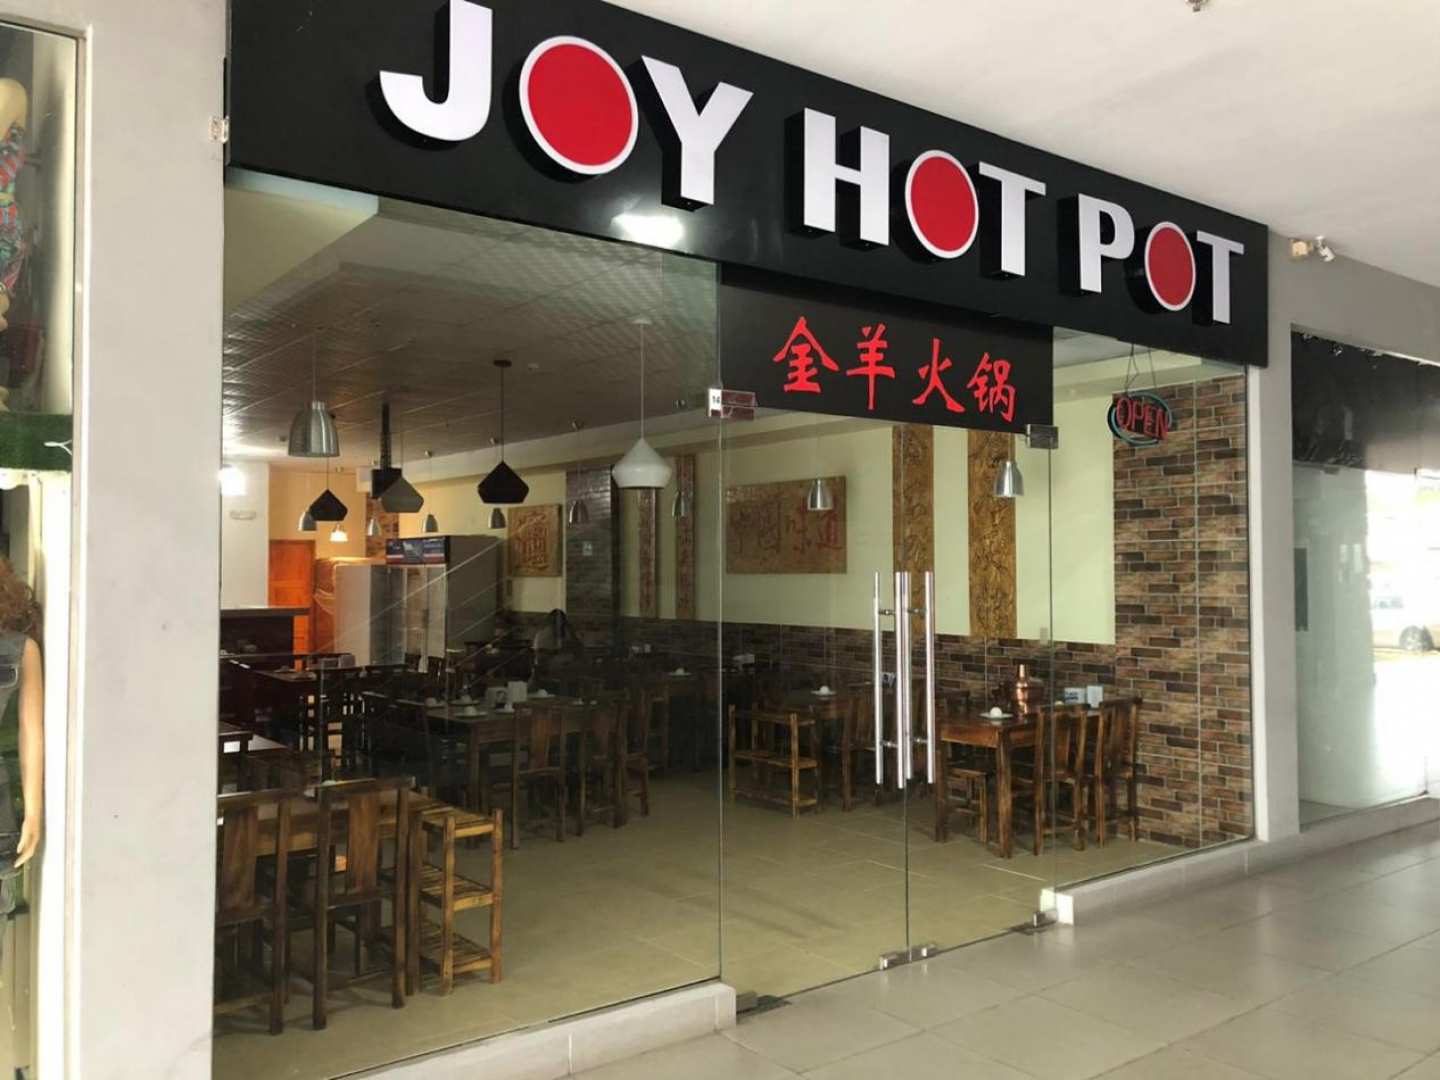 Joy Hot Pot